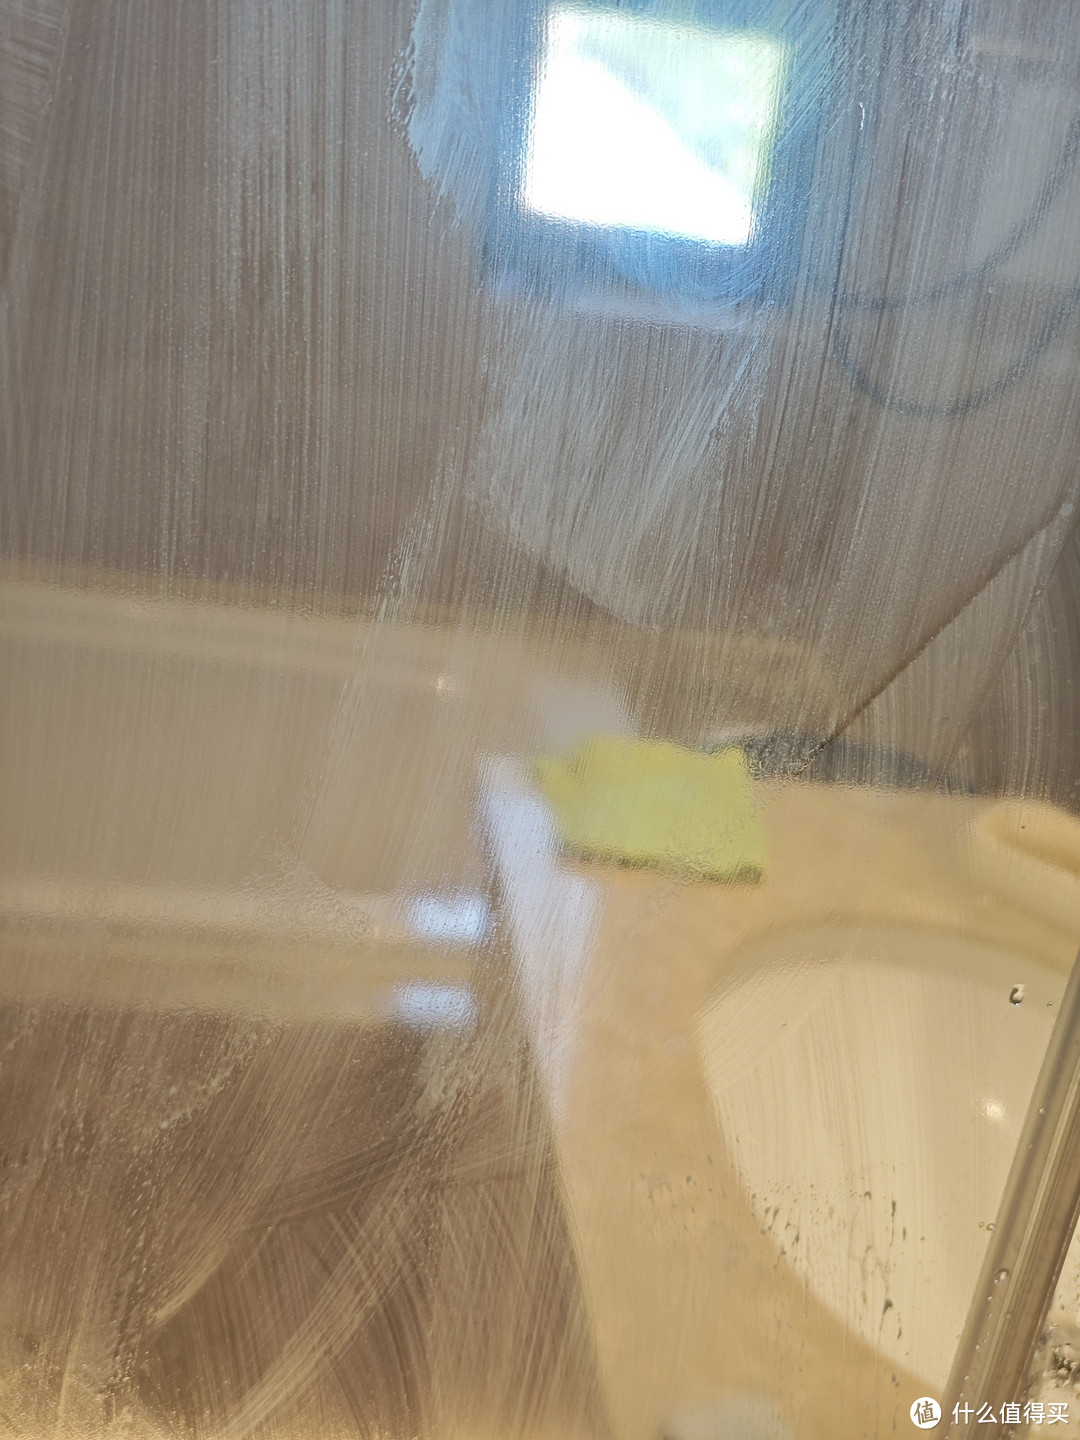 分享一个浴室玻璃门清洁的好办法